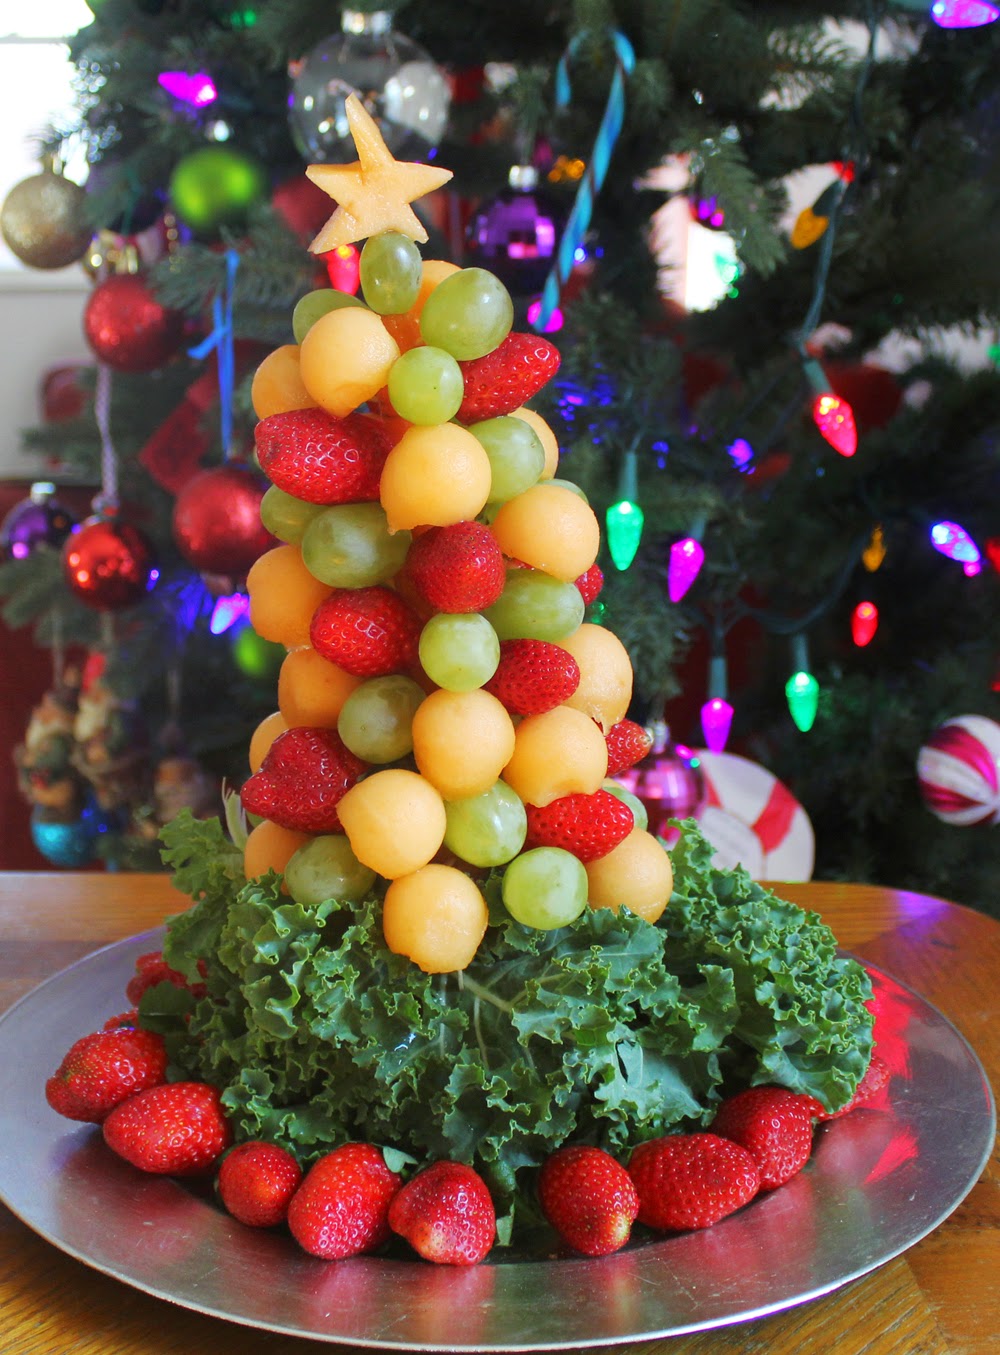 I made for you: Christmas Tree, a healthy dessert.